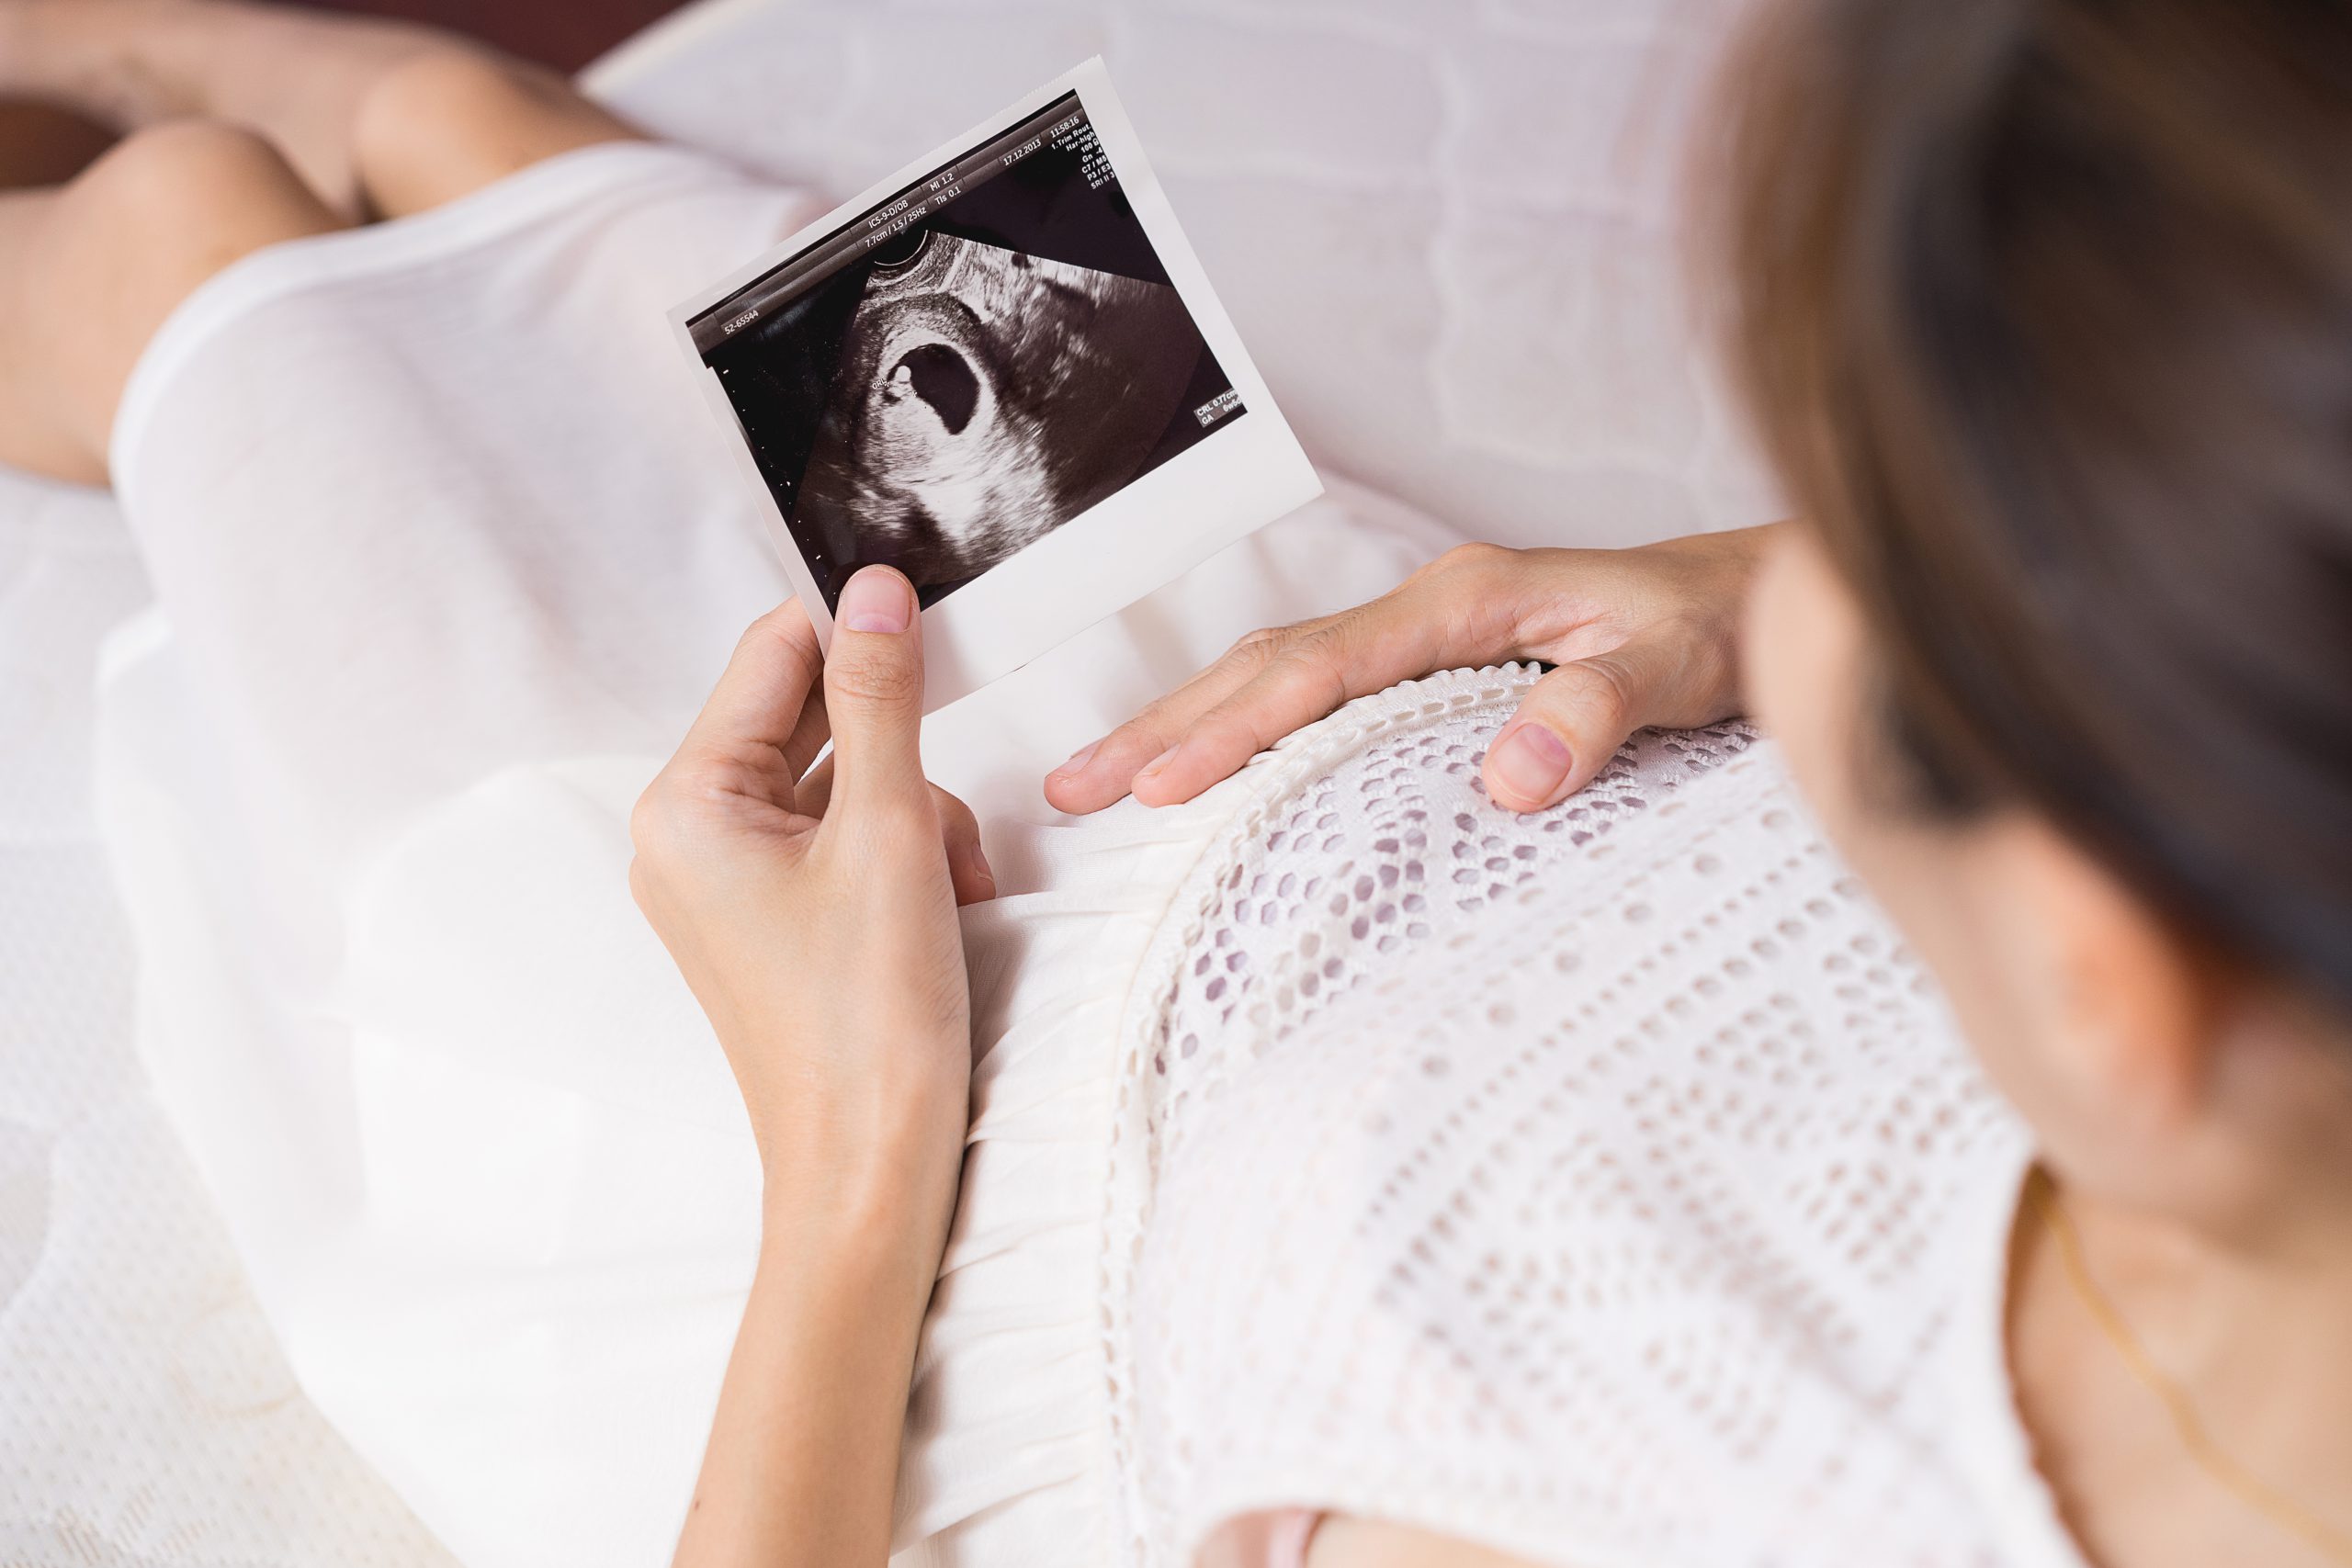 siêu âm thai nhiều lần không ảnh hưởng tới sức khỏe thai kỳ